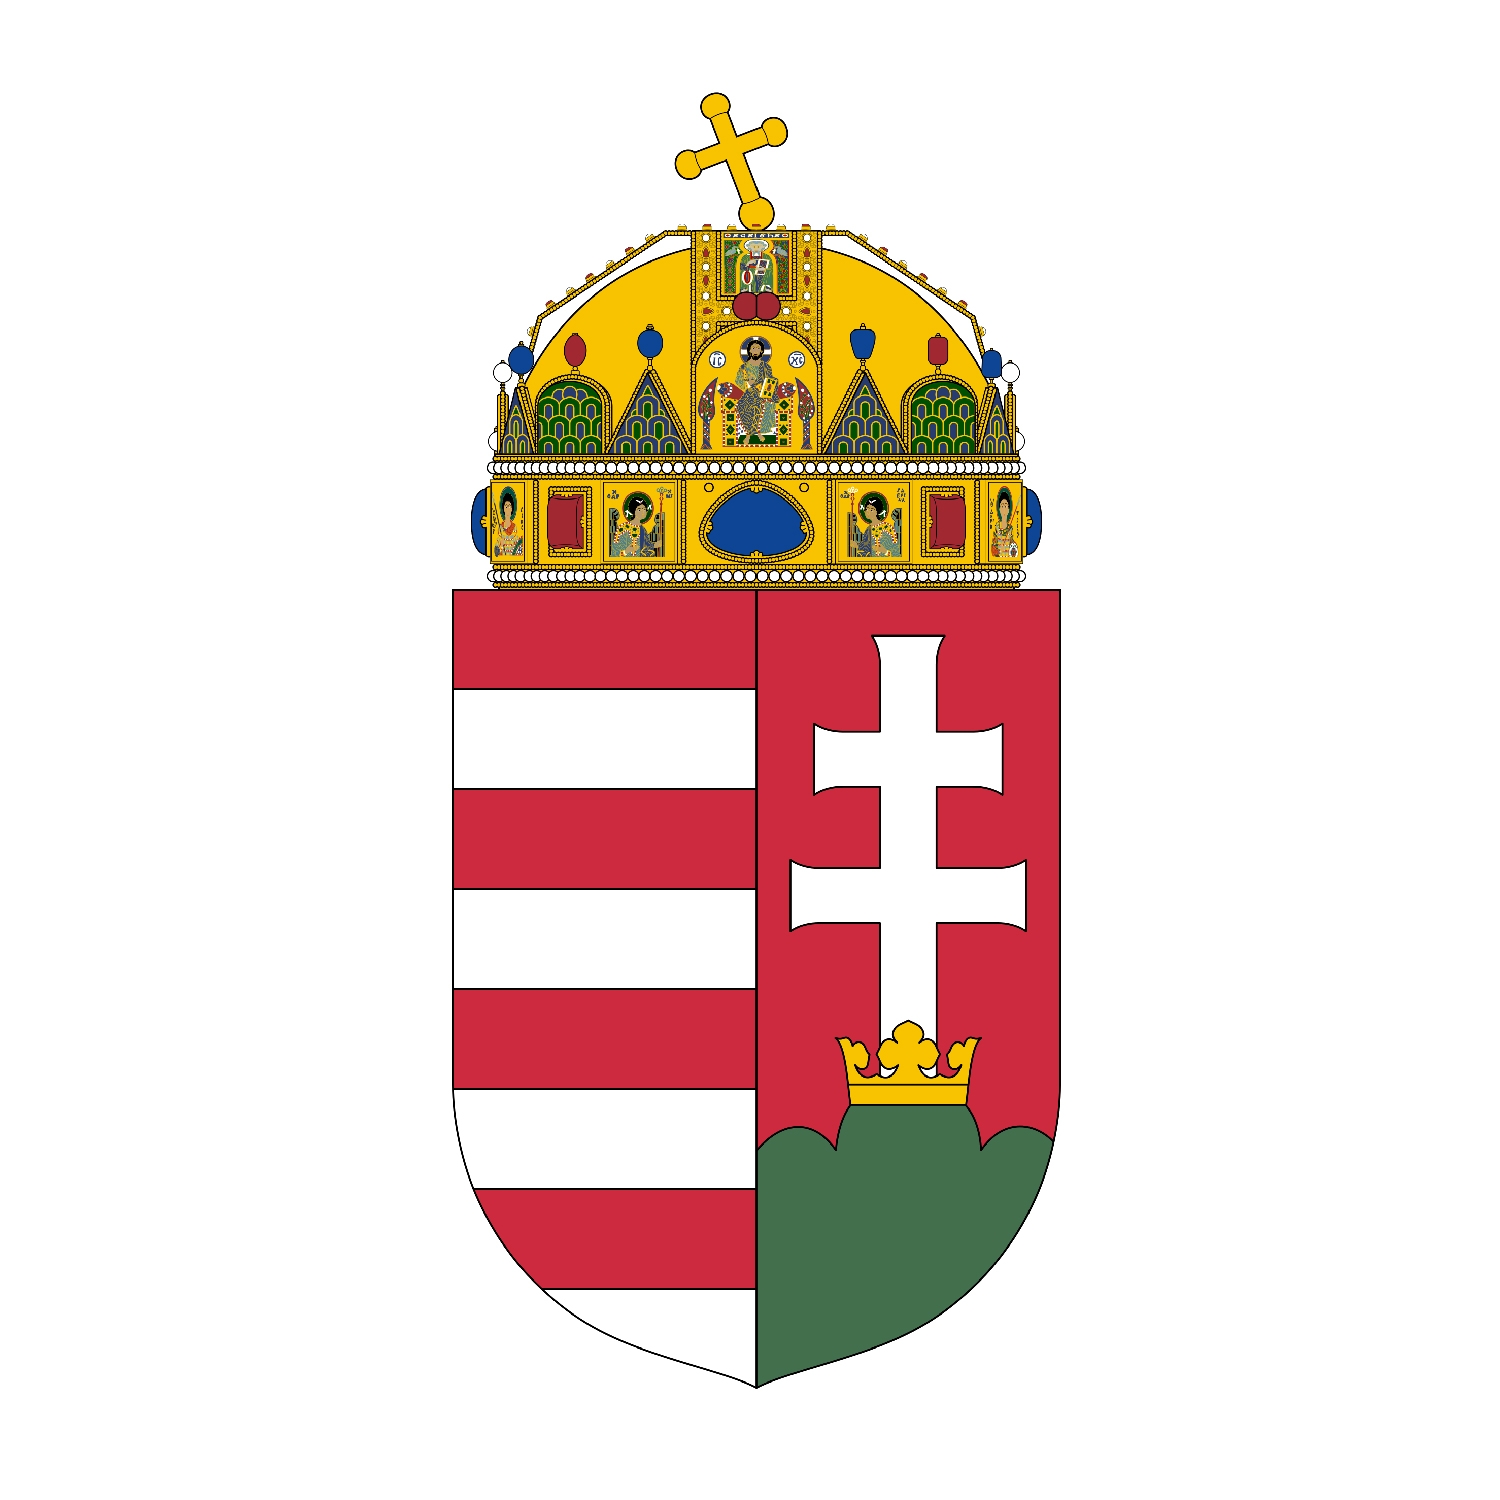 匈牙利国徽